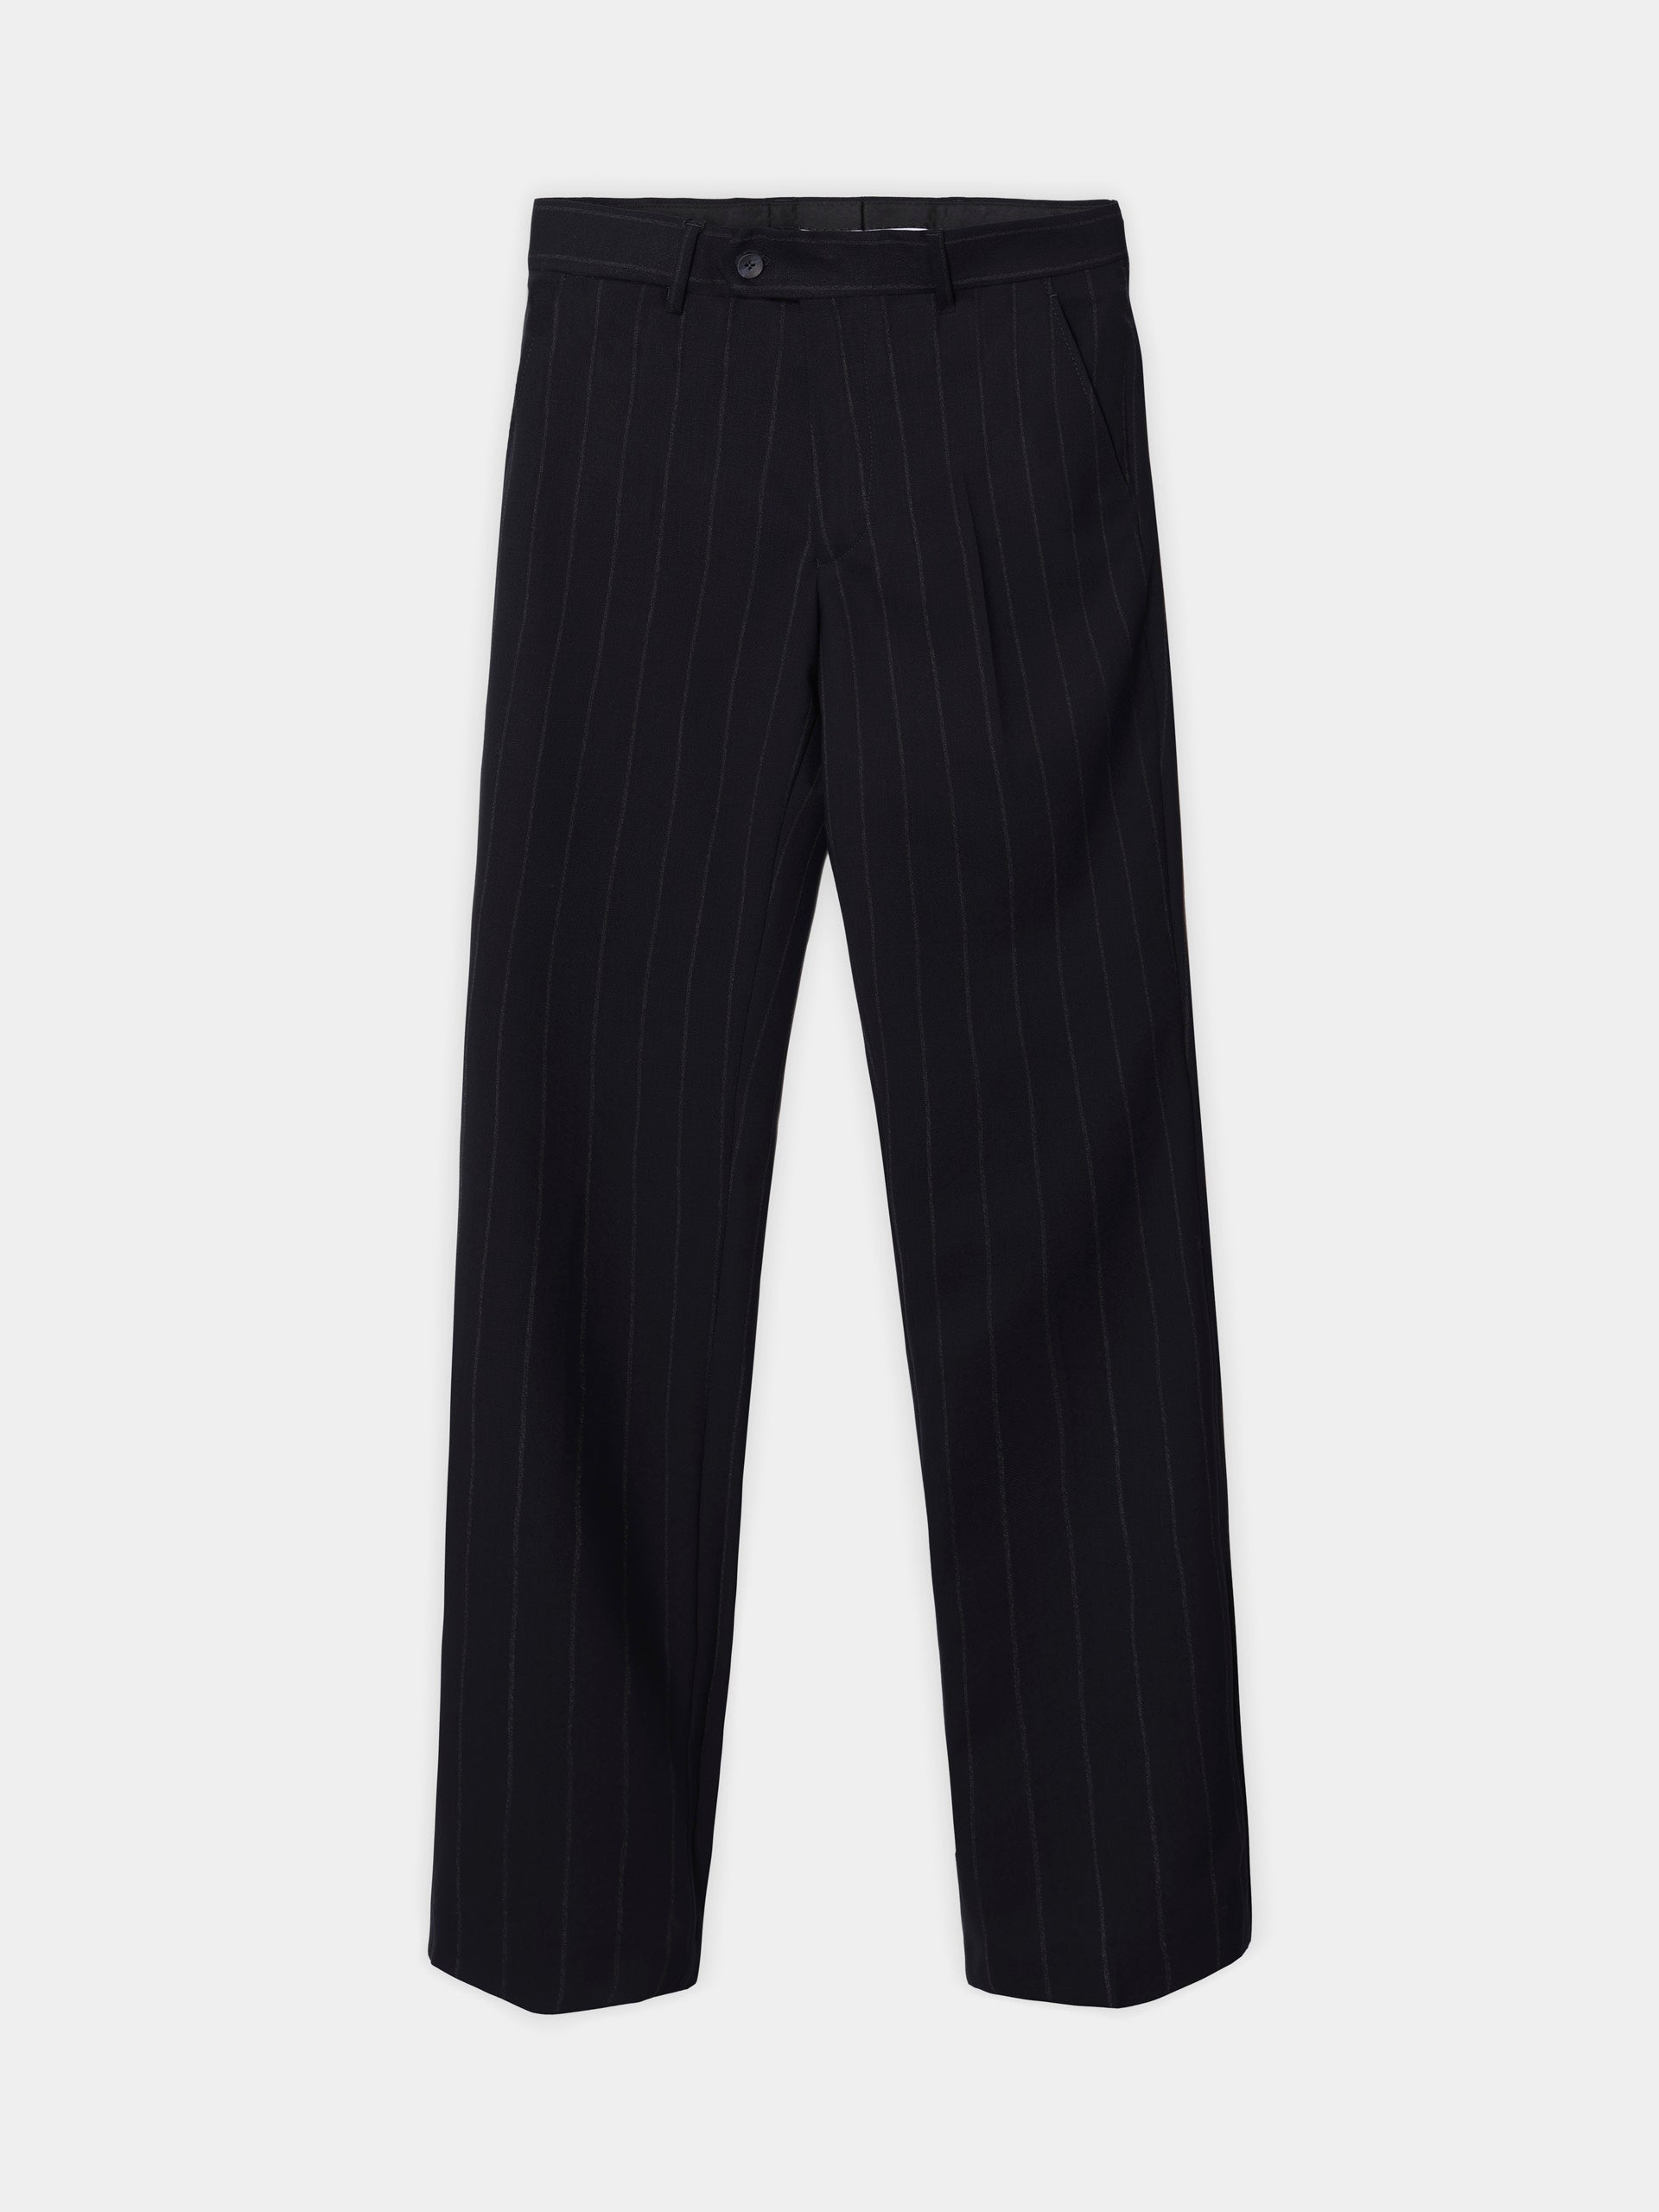 Navy blue pinstripe suit pants